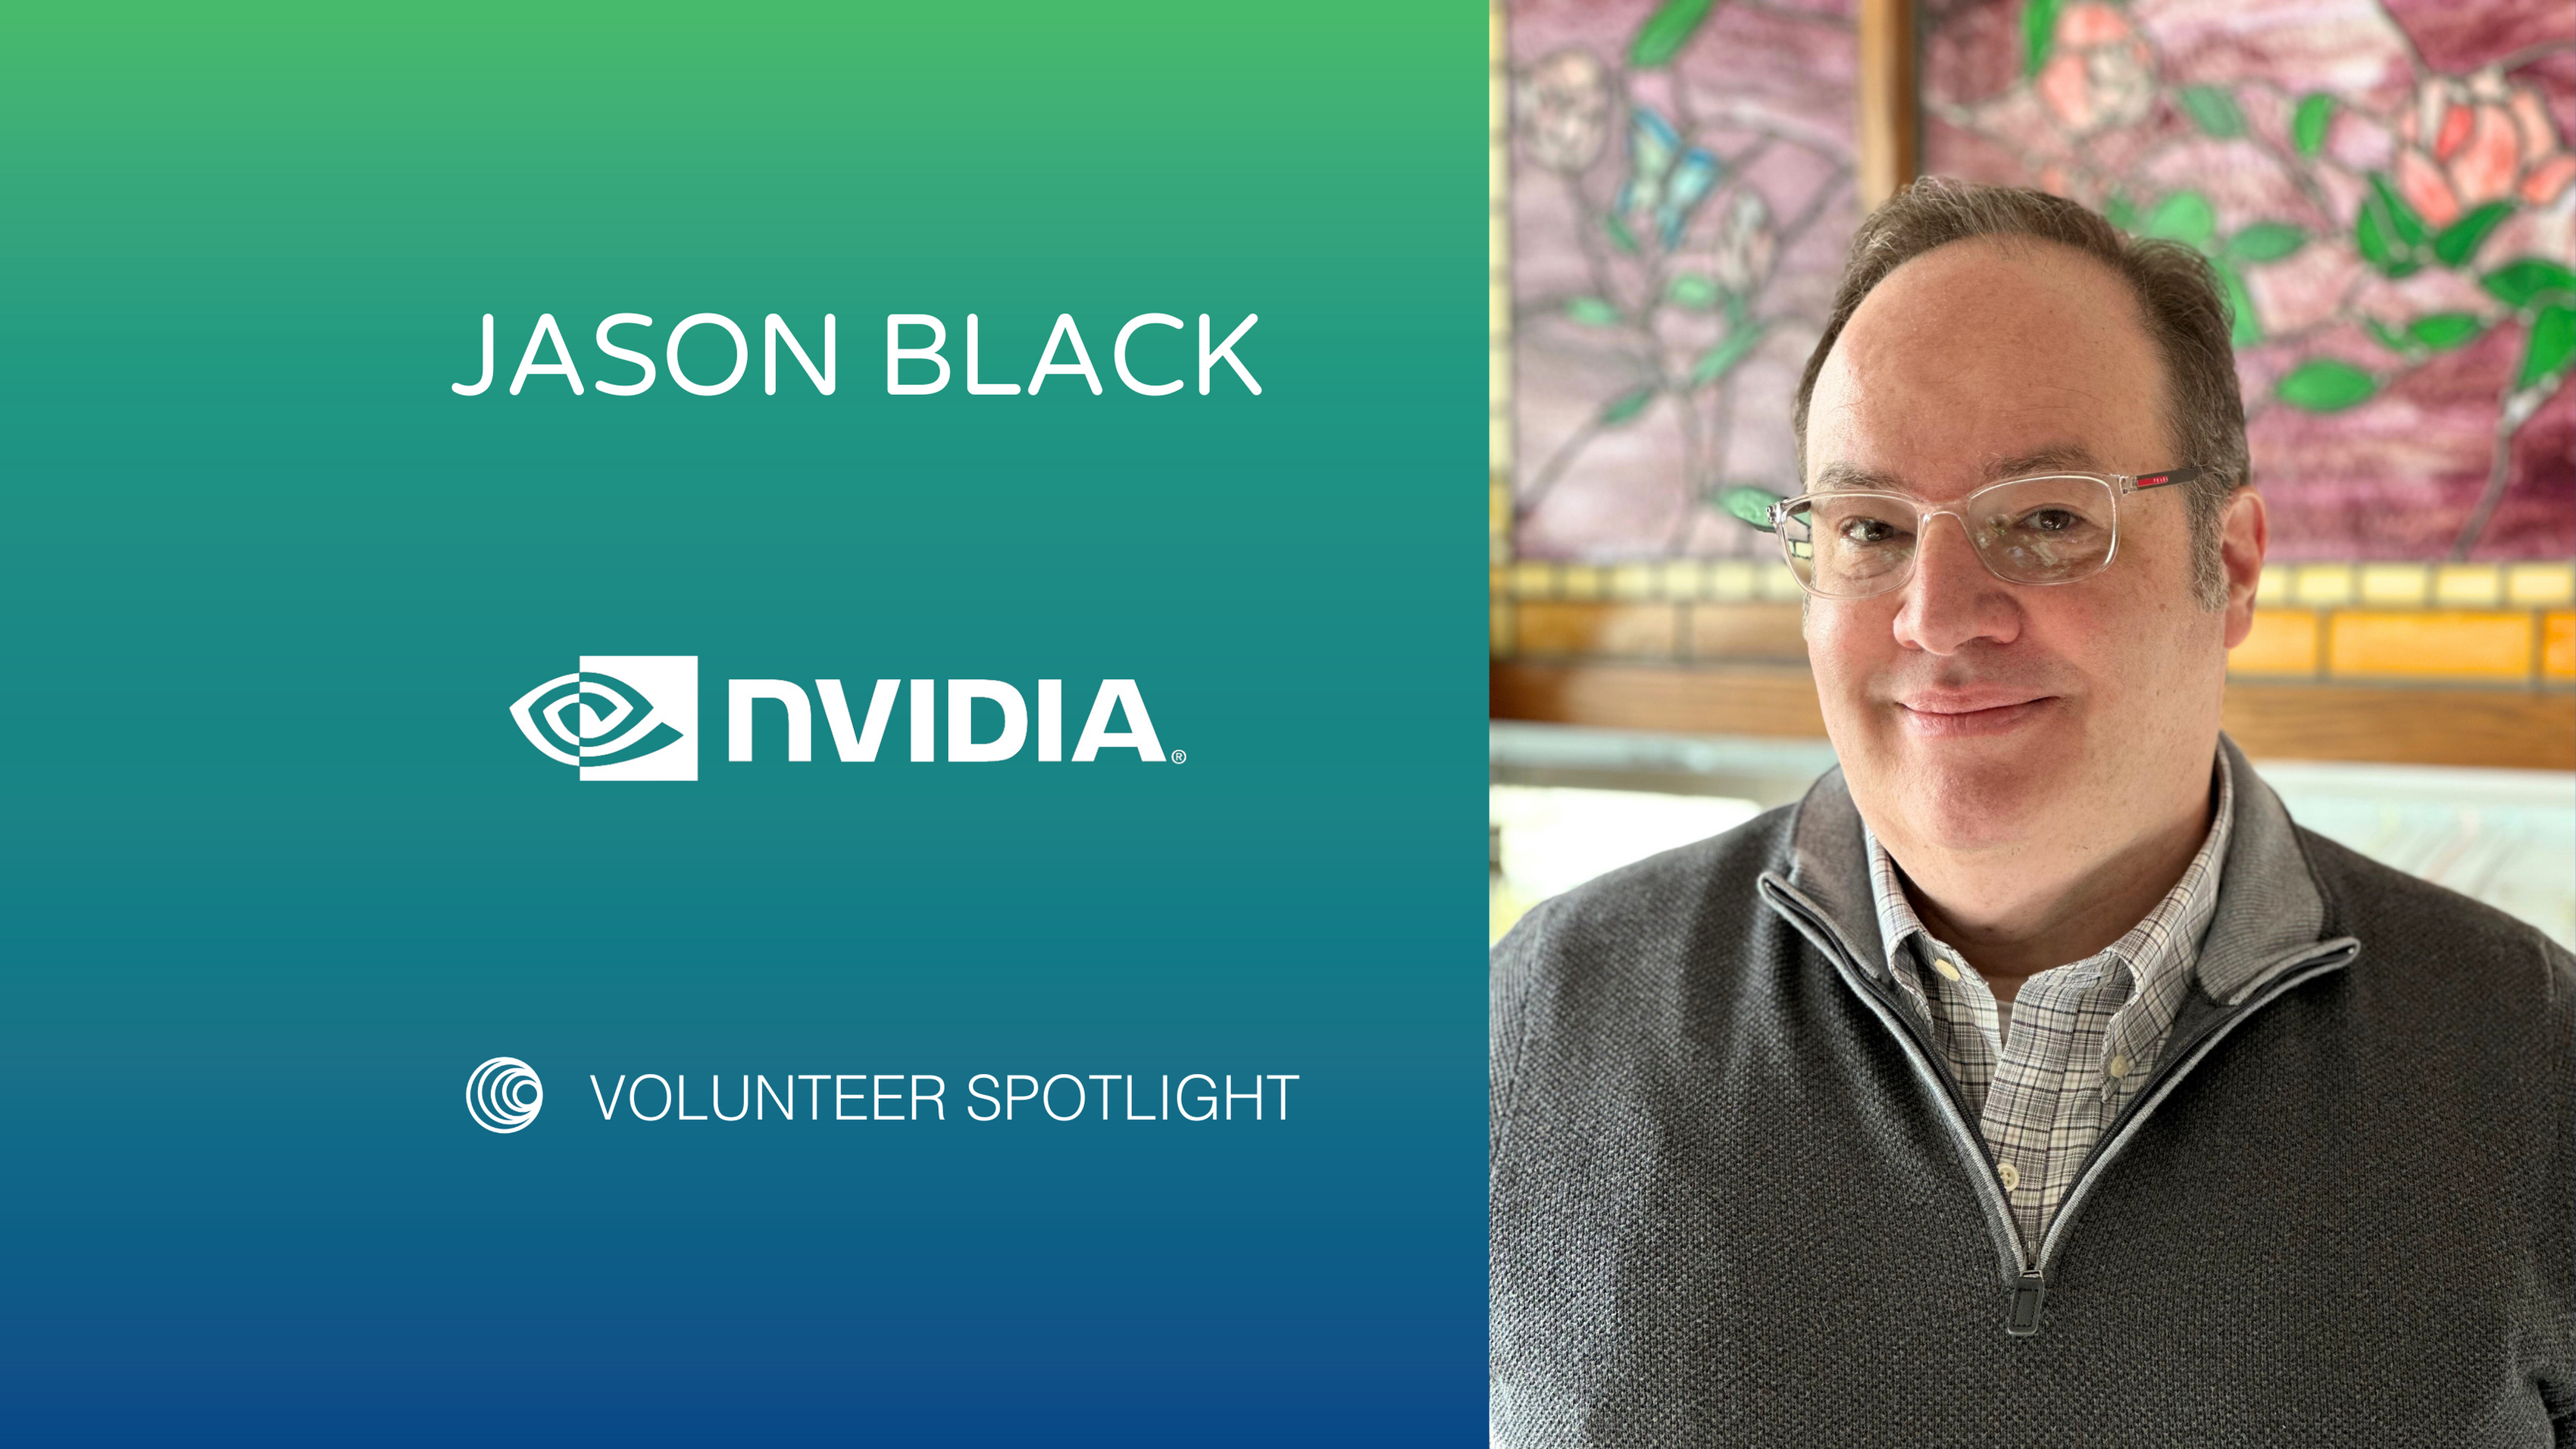 Jason Black’s Dedication to Social Impact and Volunteerism at NVIDIA  